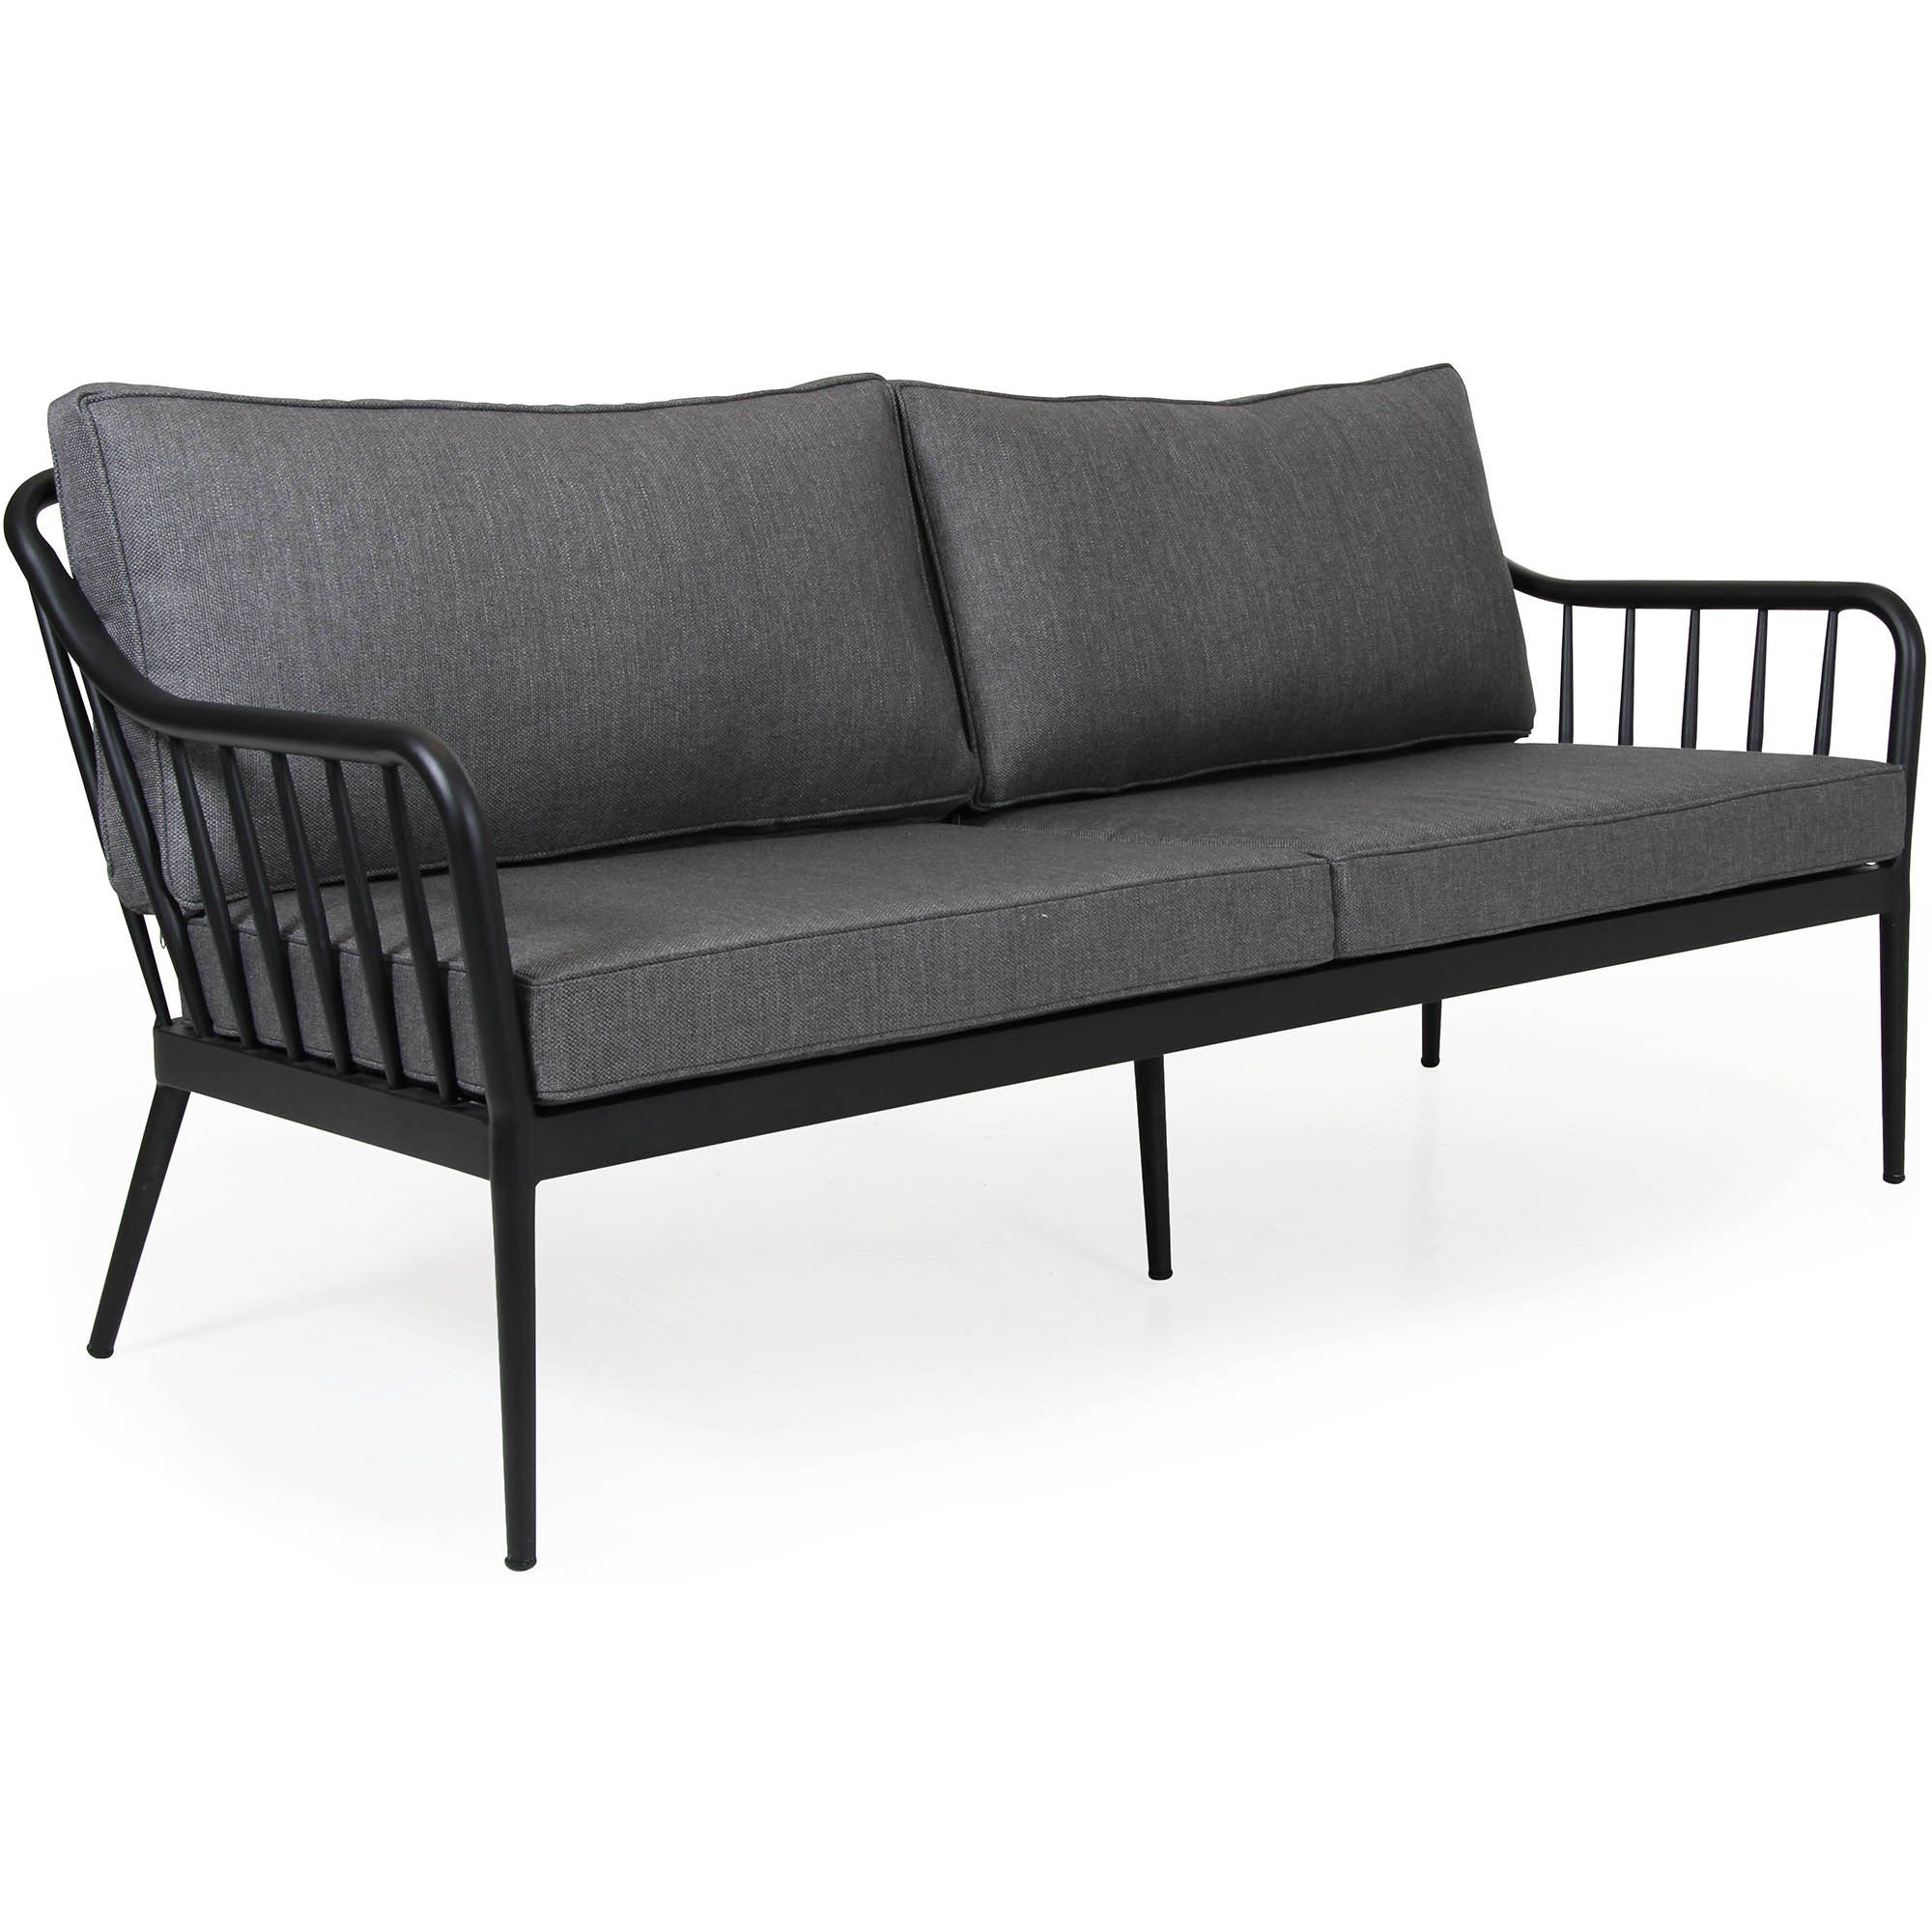 Coleville 3-sits soffa, en utemöbel tillverkad i aluminium med dynor i vädertåligt grått olefintyg från Brafab.